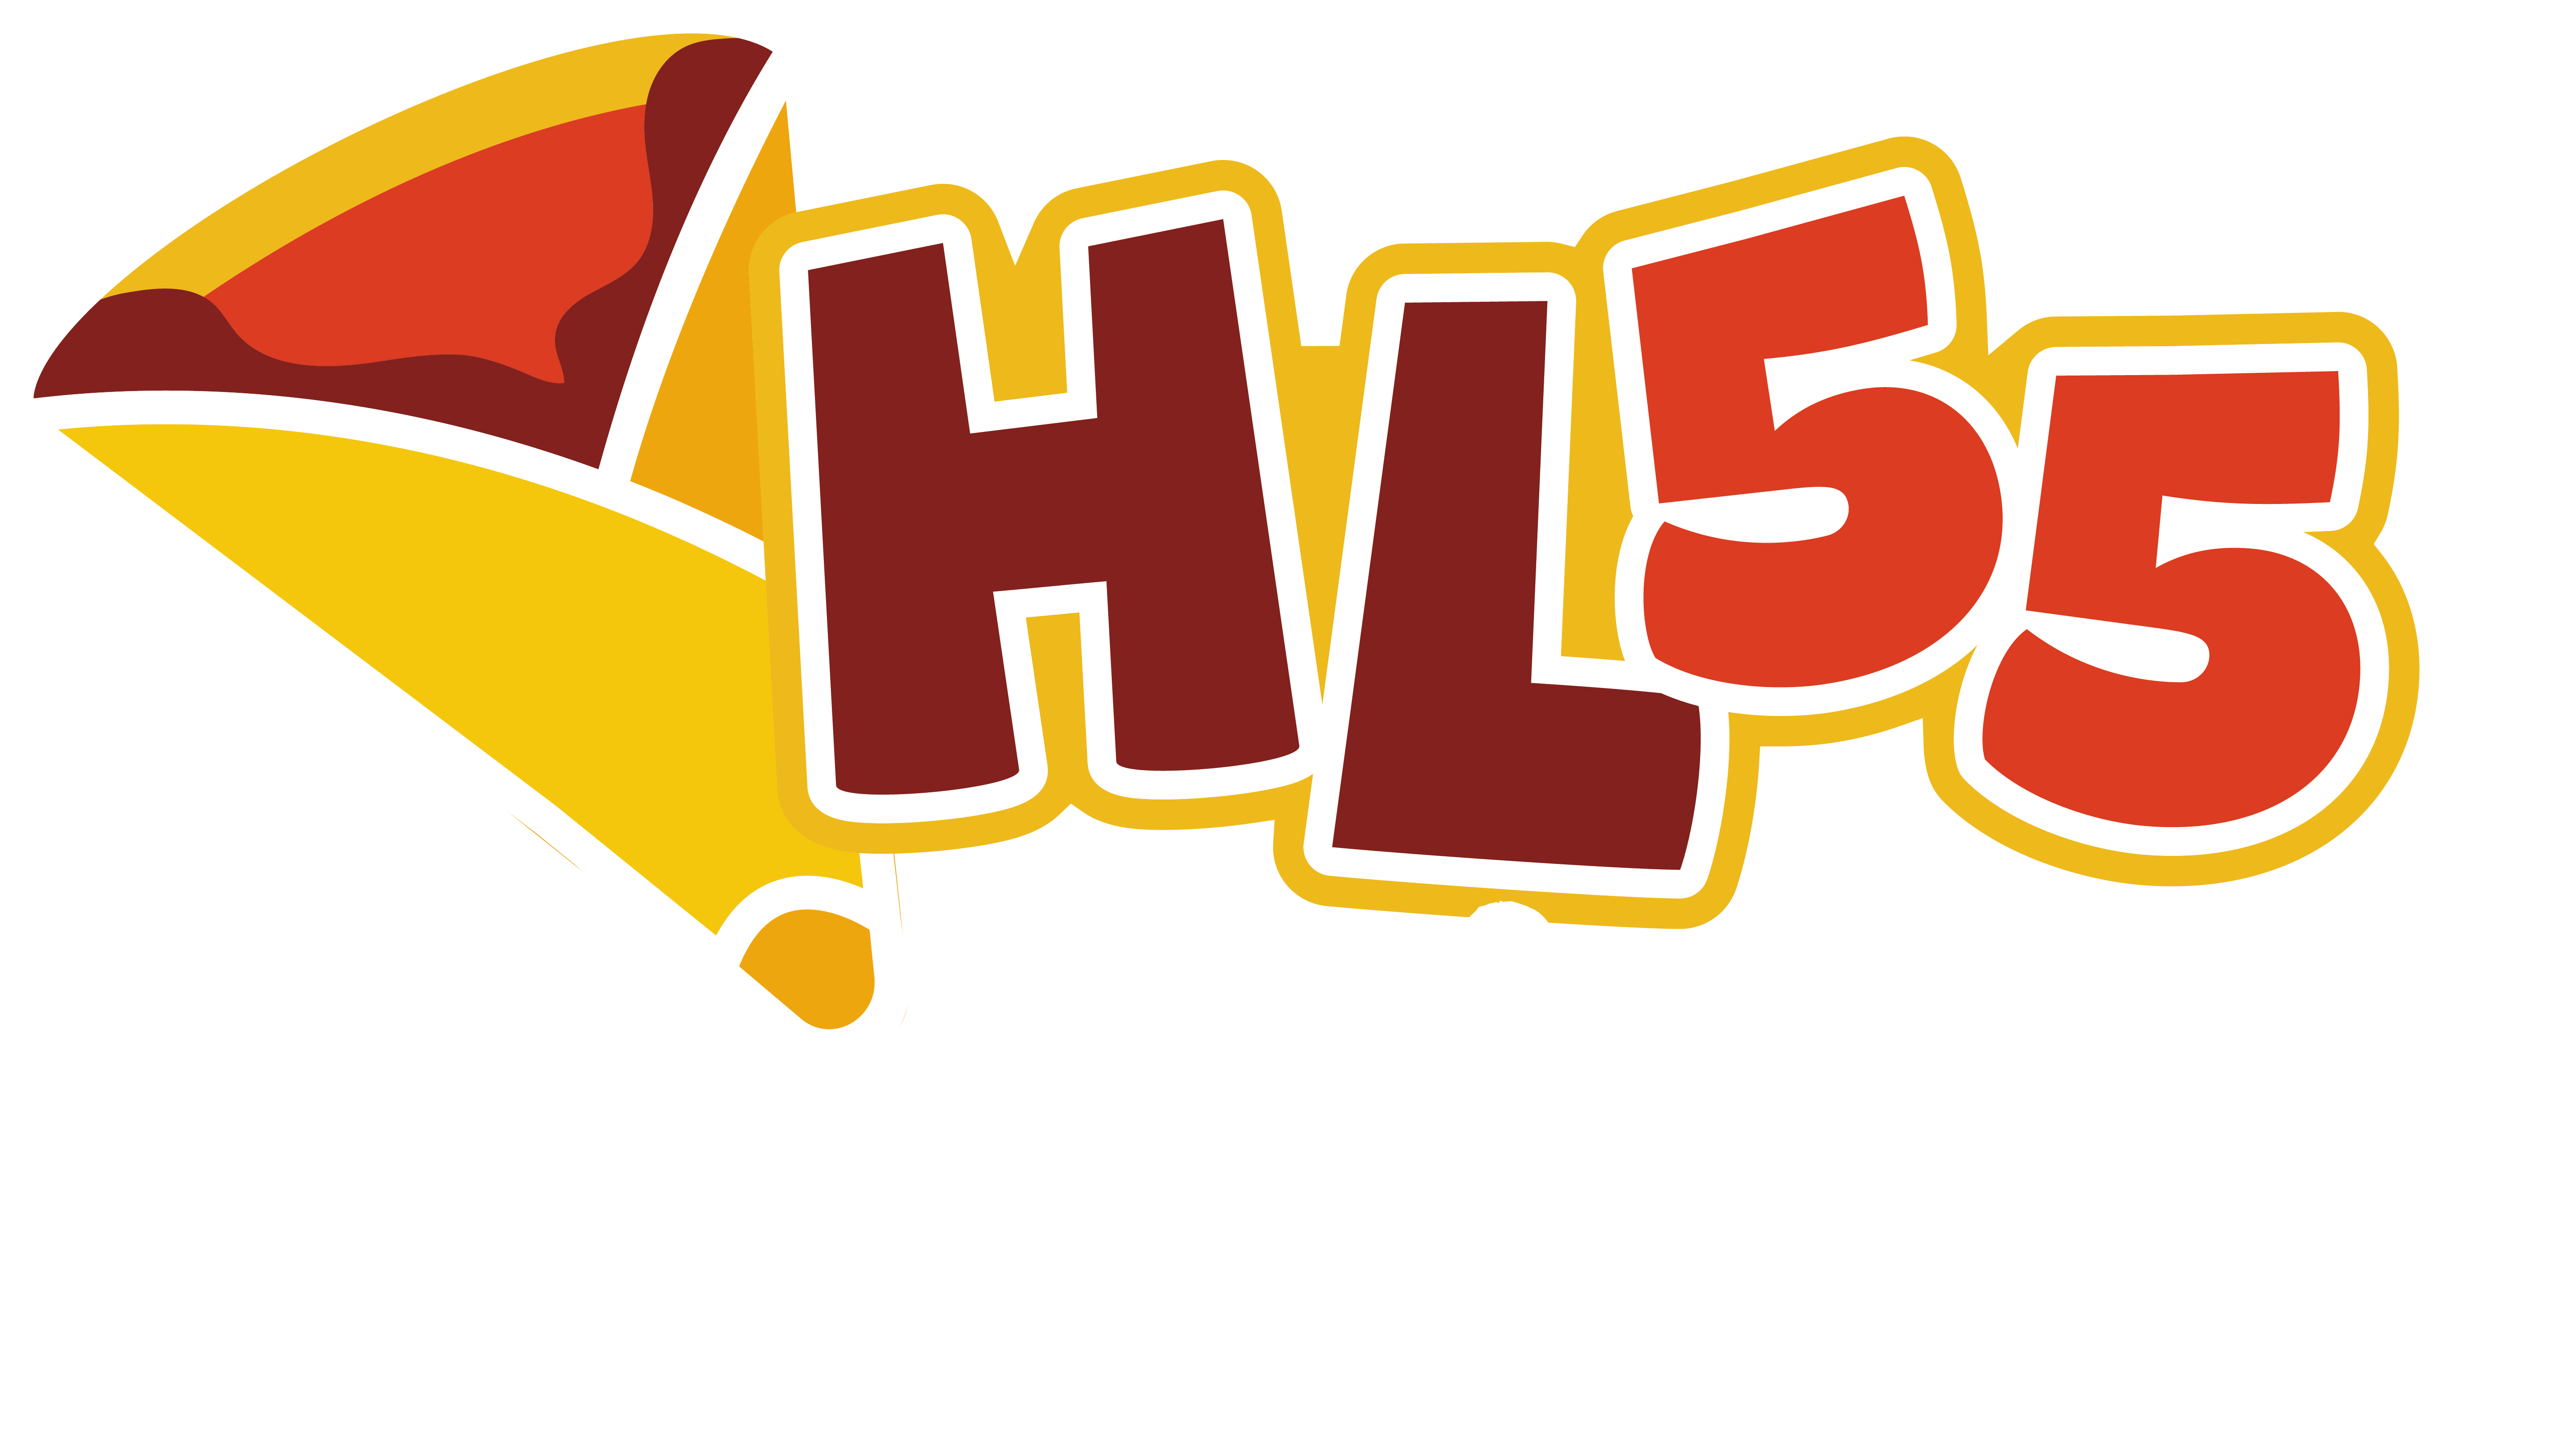 HL55 CREPERIA